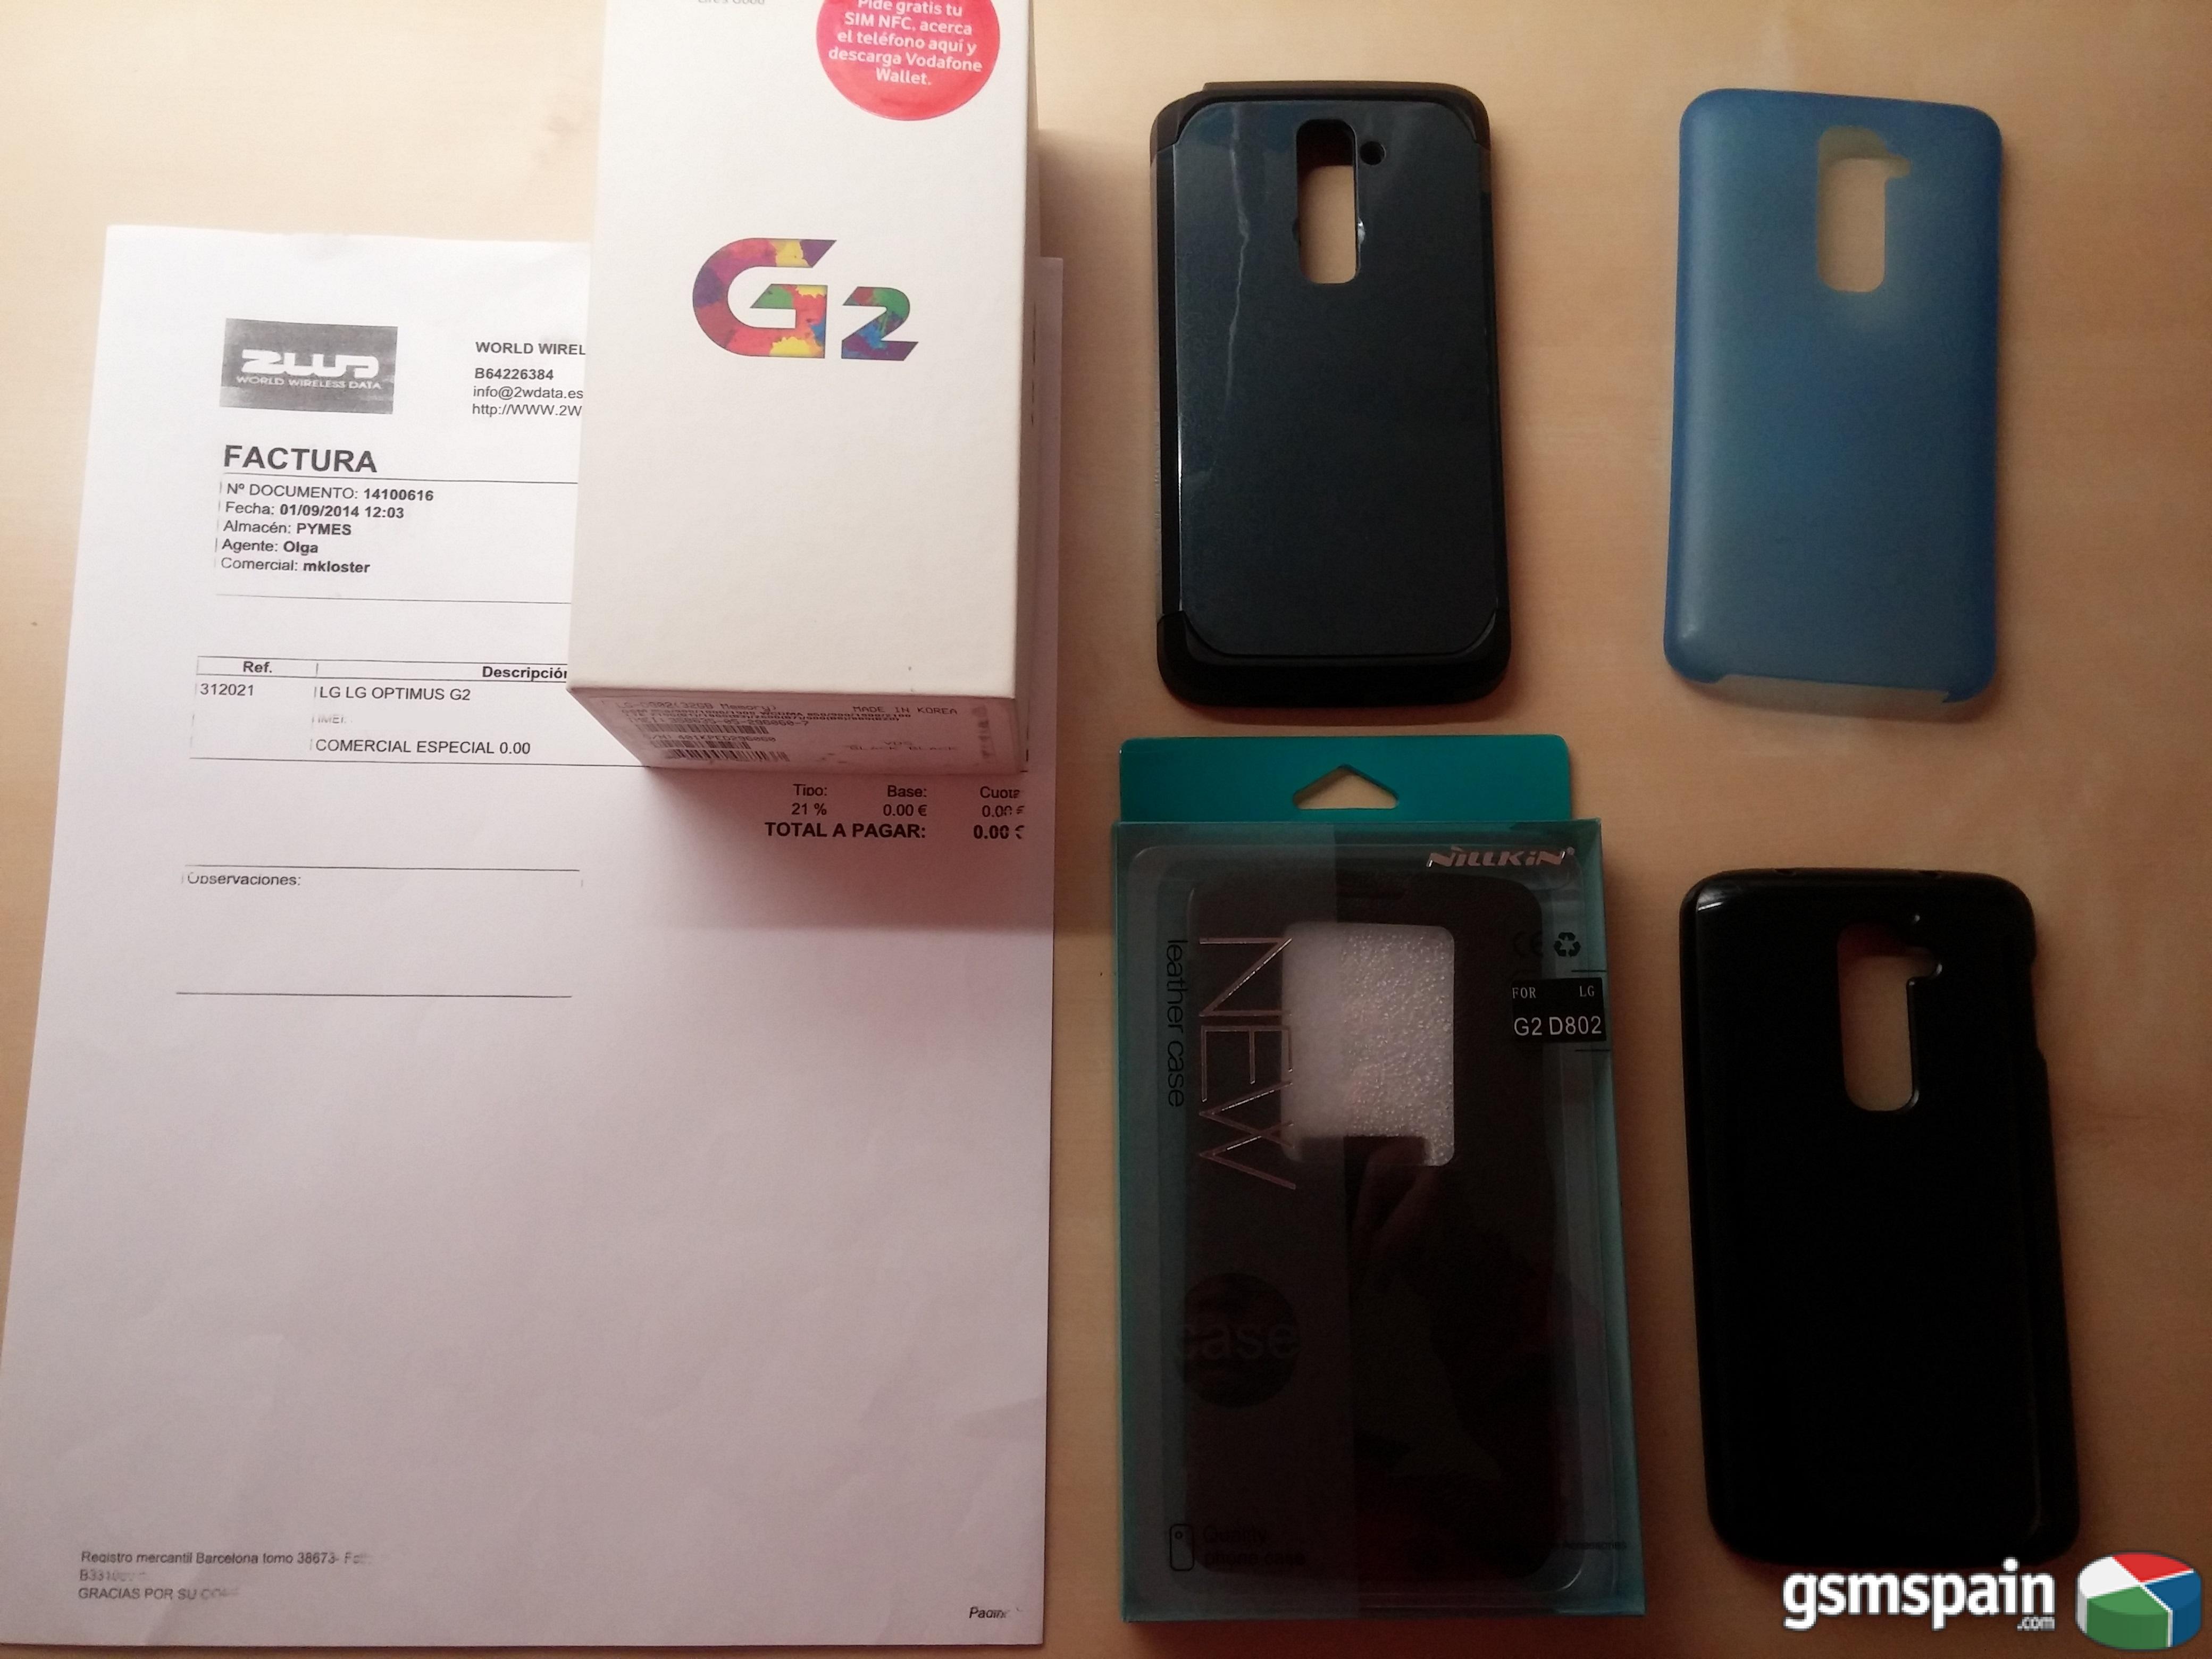 [VENDO] LG G2 D802 Negro de 32GB con accesorios y garanta